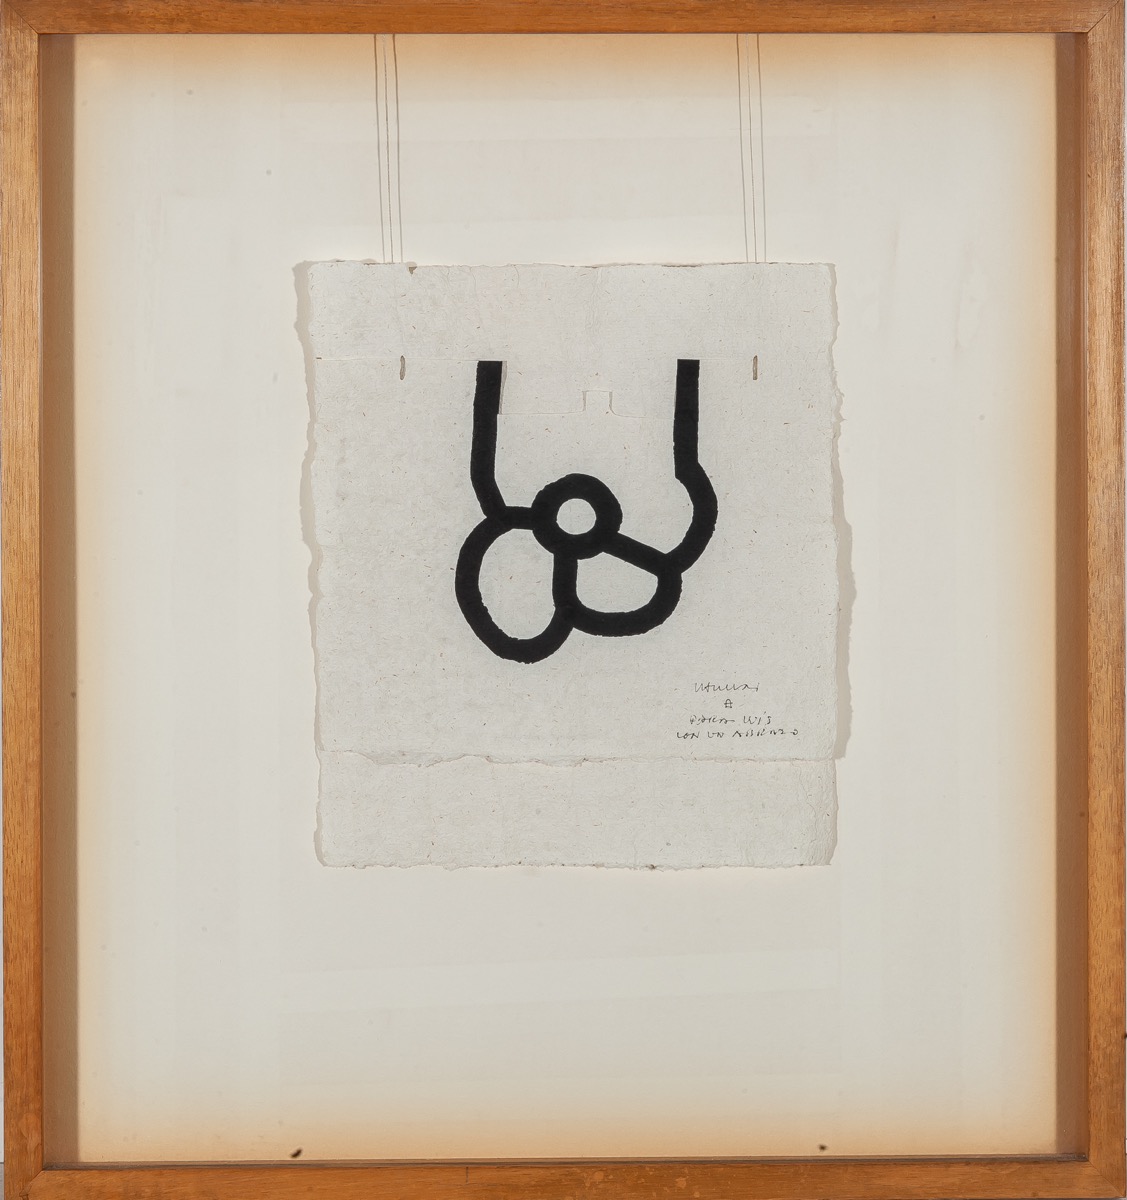 EDUARDO CHILLIDA (San Sebastián, 1924 - 2002)<br/>"Untitled" 1988<br/>Paper, ink, string<br/>Gravitation<br/>Signed and dedicated<br/>22 x 20 cm<br/>15.000 - 18.000 €